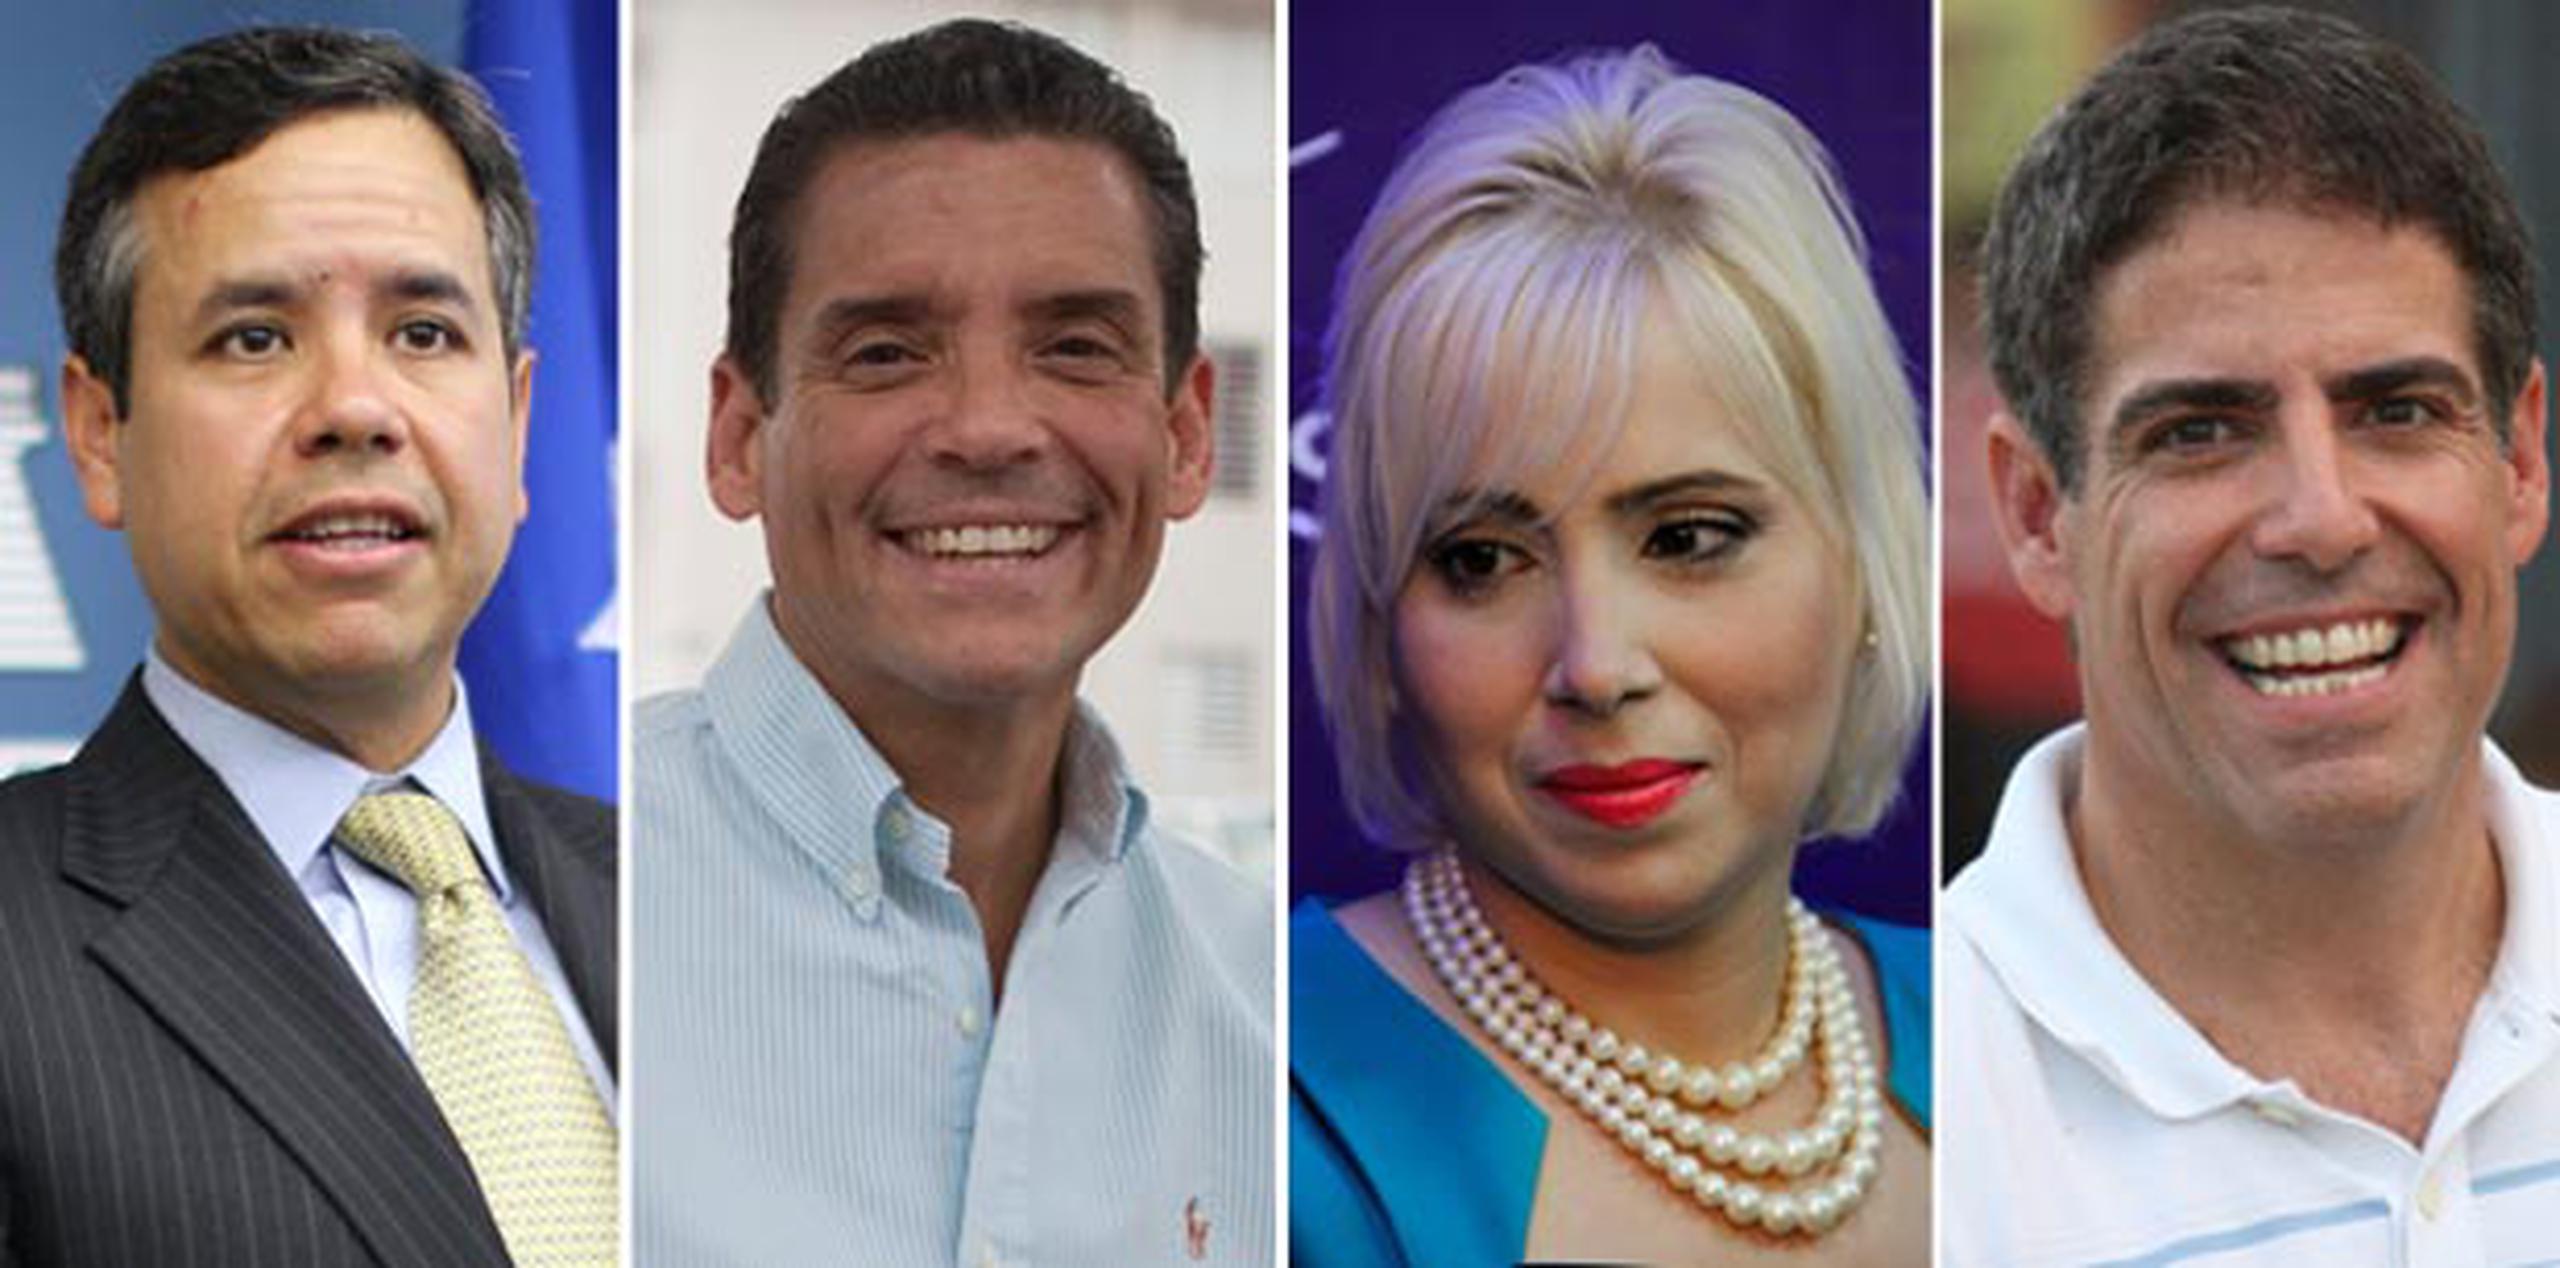 Miguel Romero, Leo Díaz, Kimmey Raschke y Roberto Arango son los que  compiten por  la silla San Juan por la Palma, con la esperanza de obtener la candidatura a alcalde en las elecciones de 2016. (Archivo)